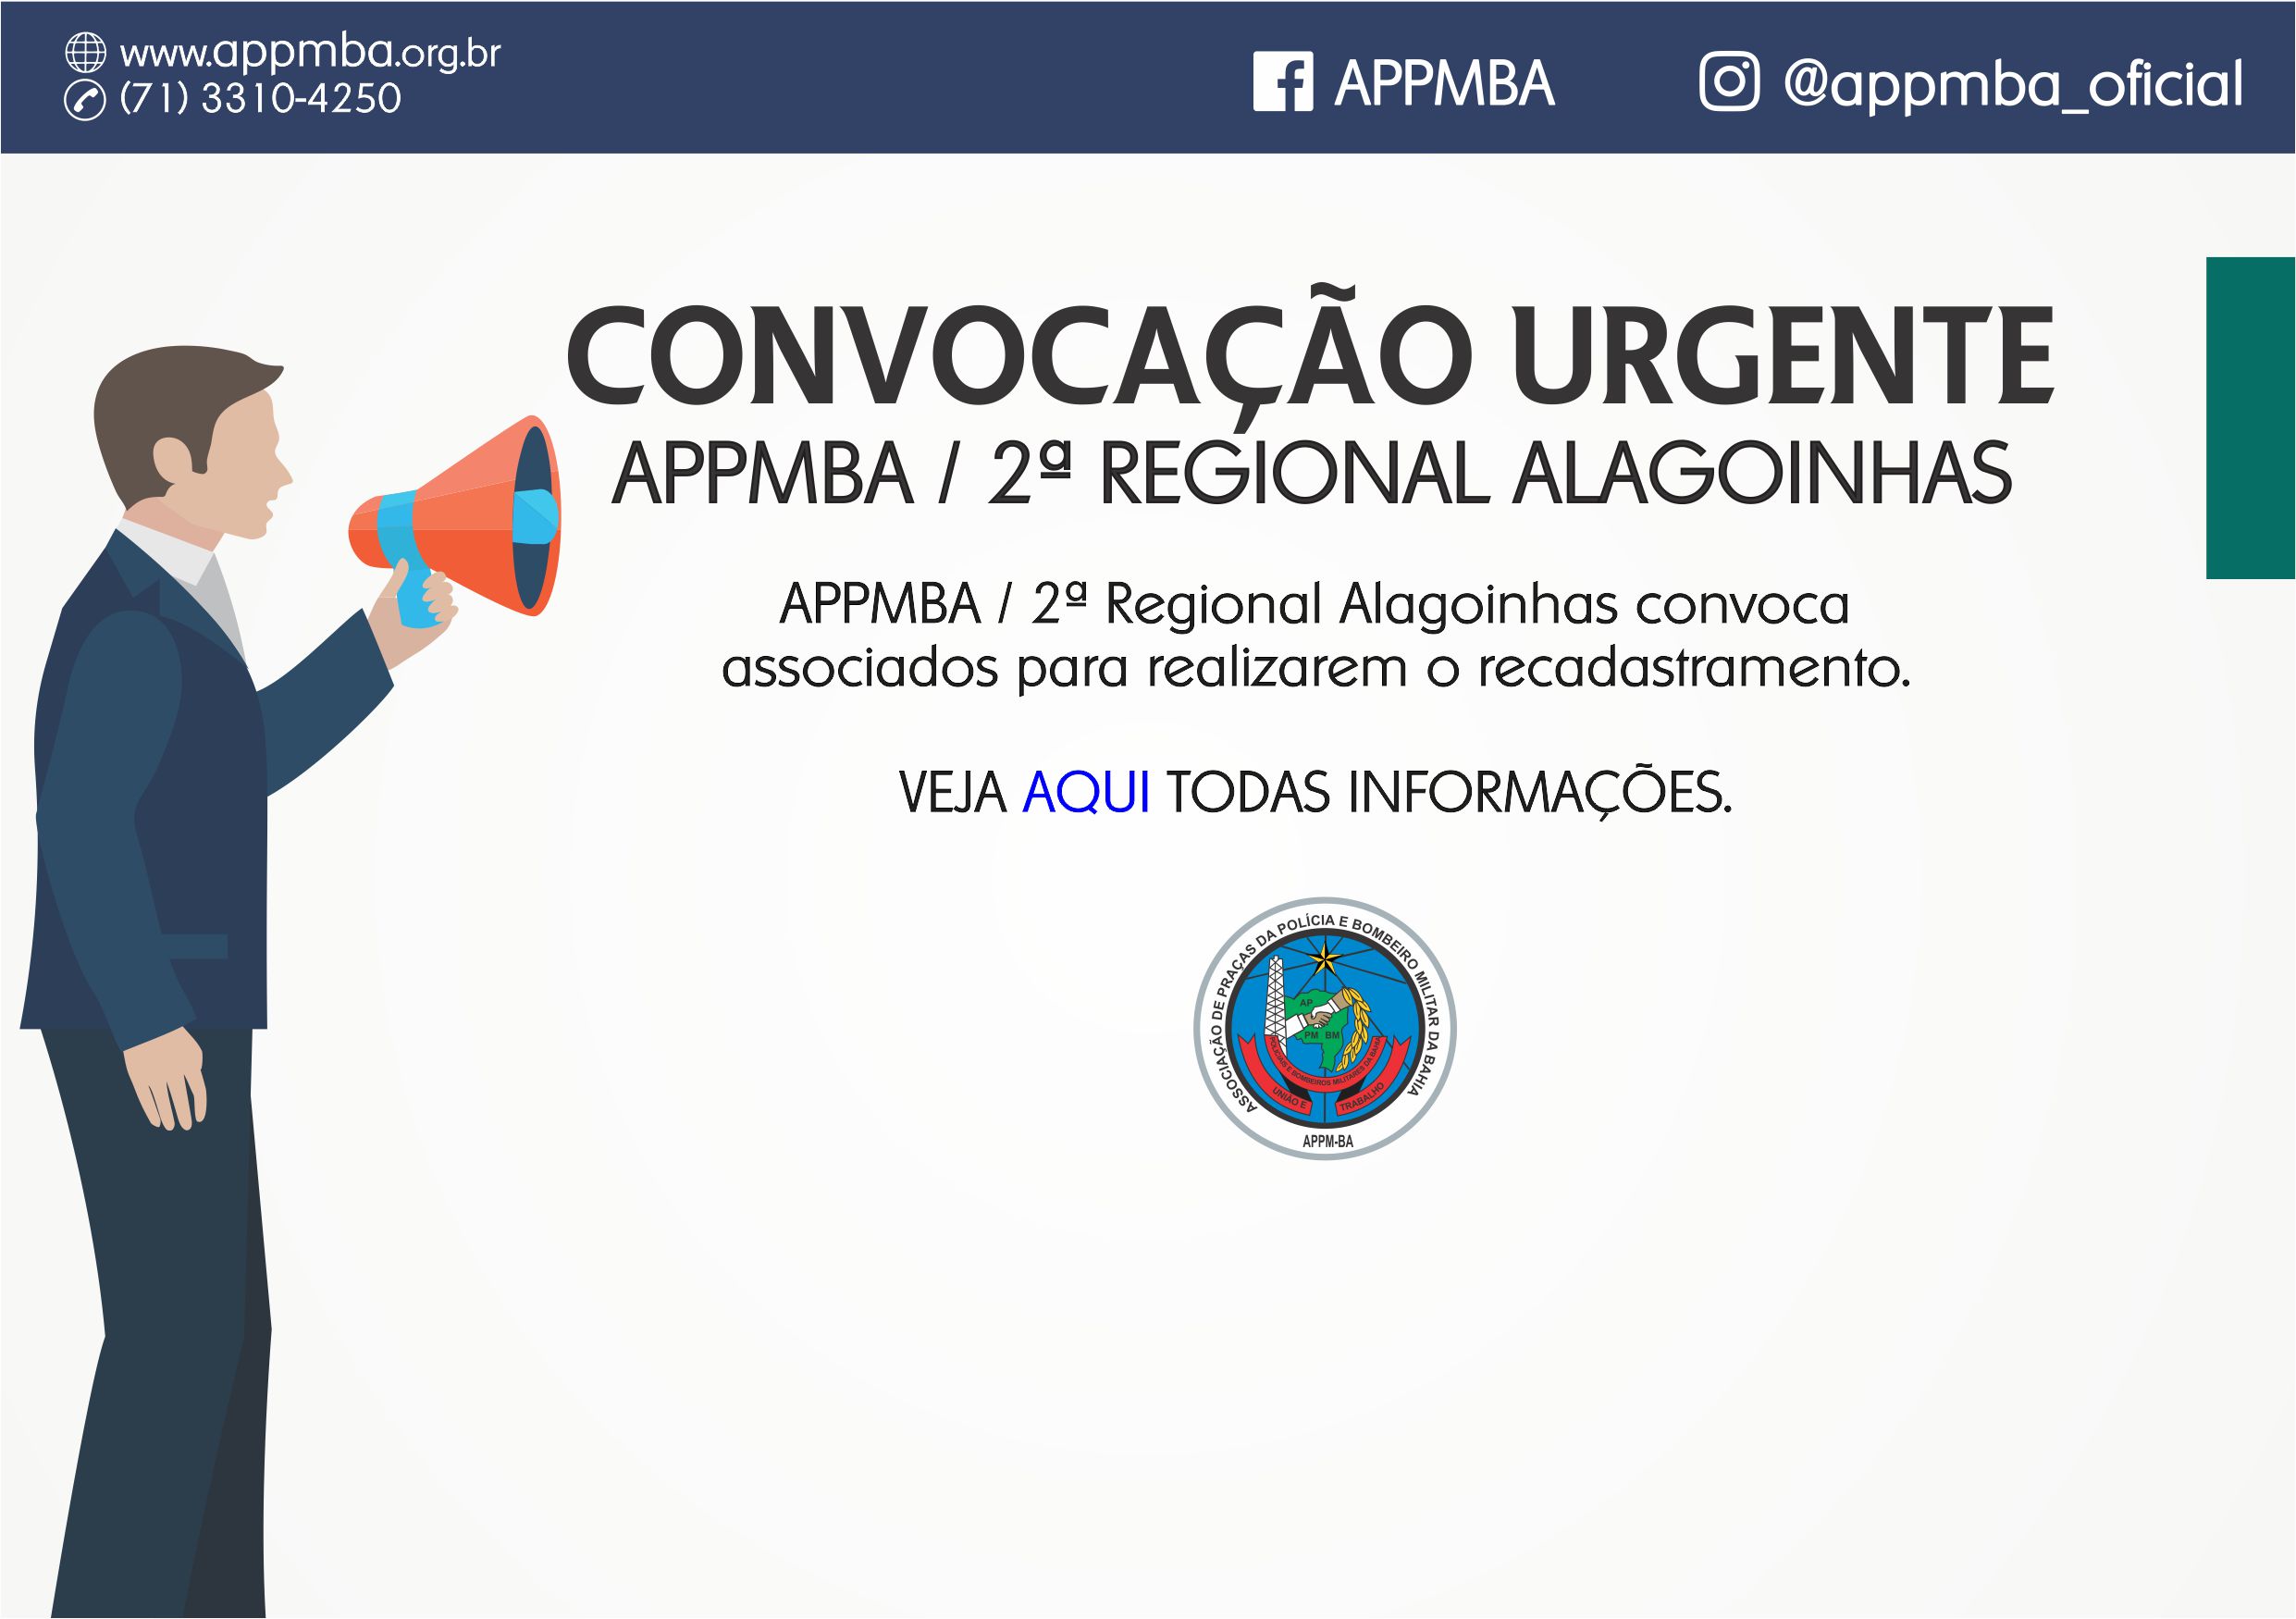 Convocação urgente para recadastramento associados de Alagoinhas